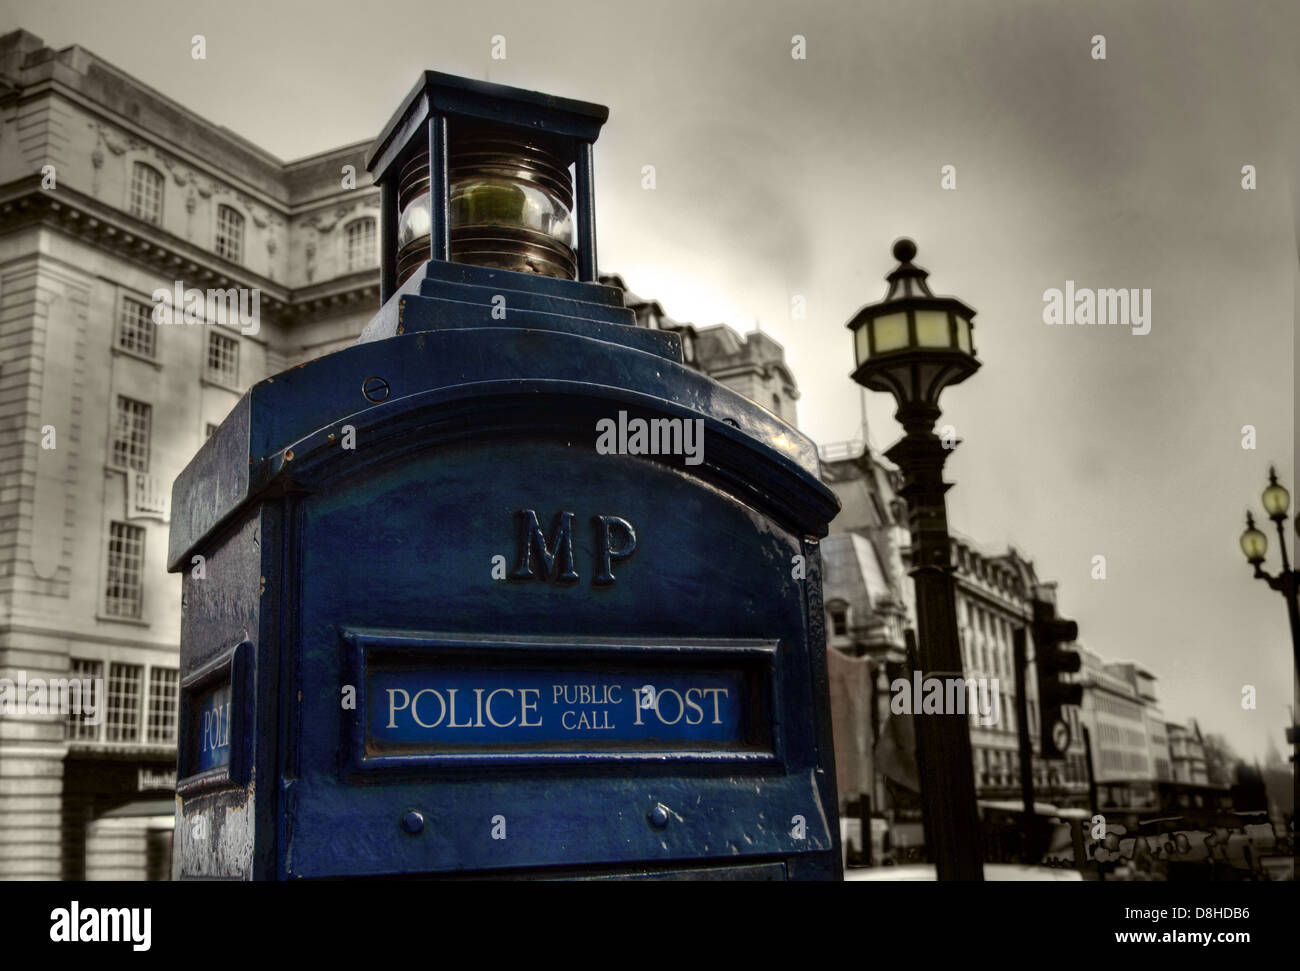 Blaue Polizei öffentlichen Aufruf Box London Dr Who, Piccadilly, England UK Stockfoto